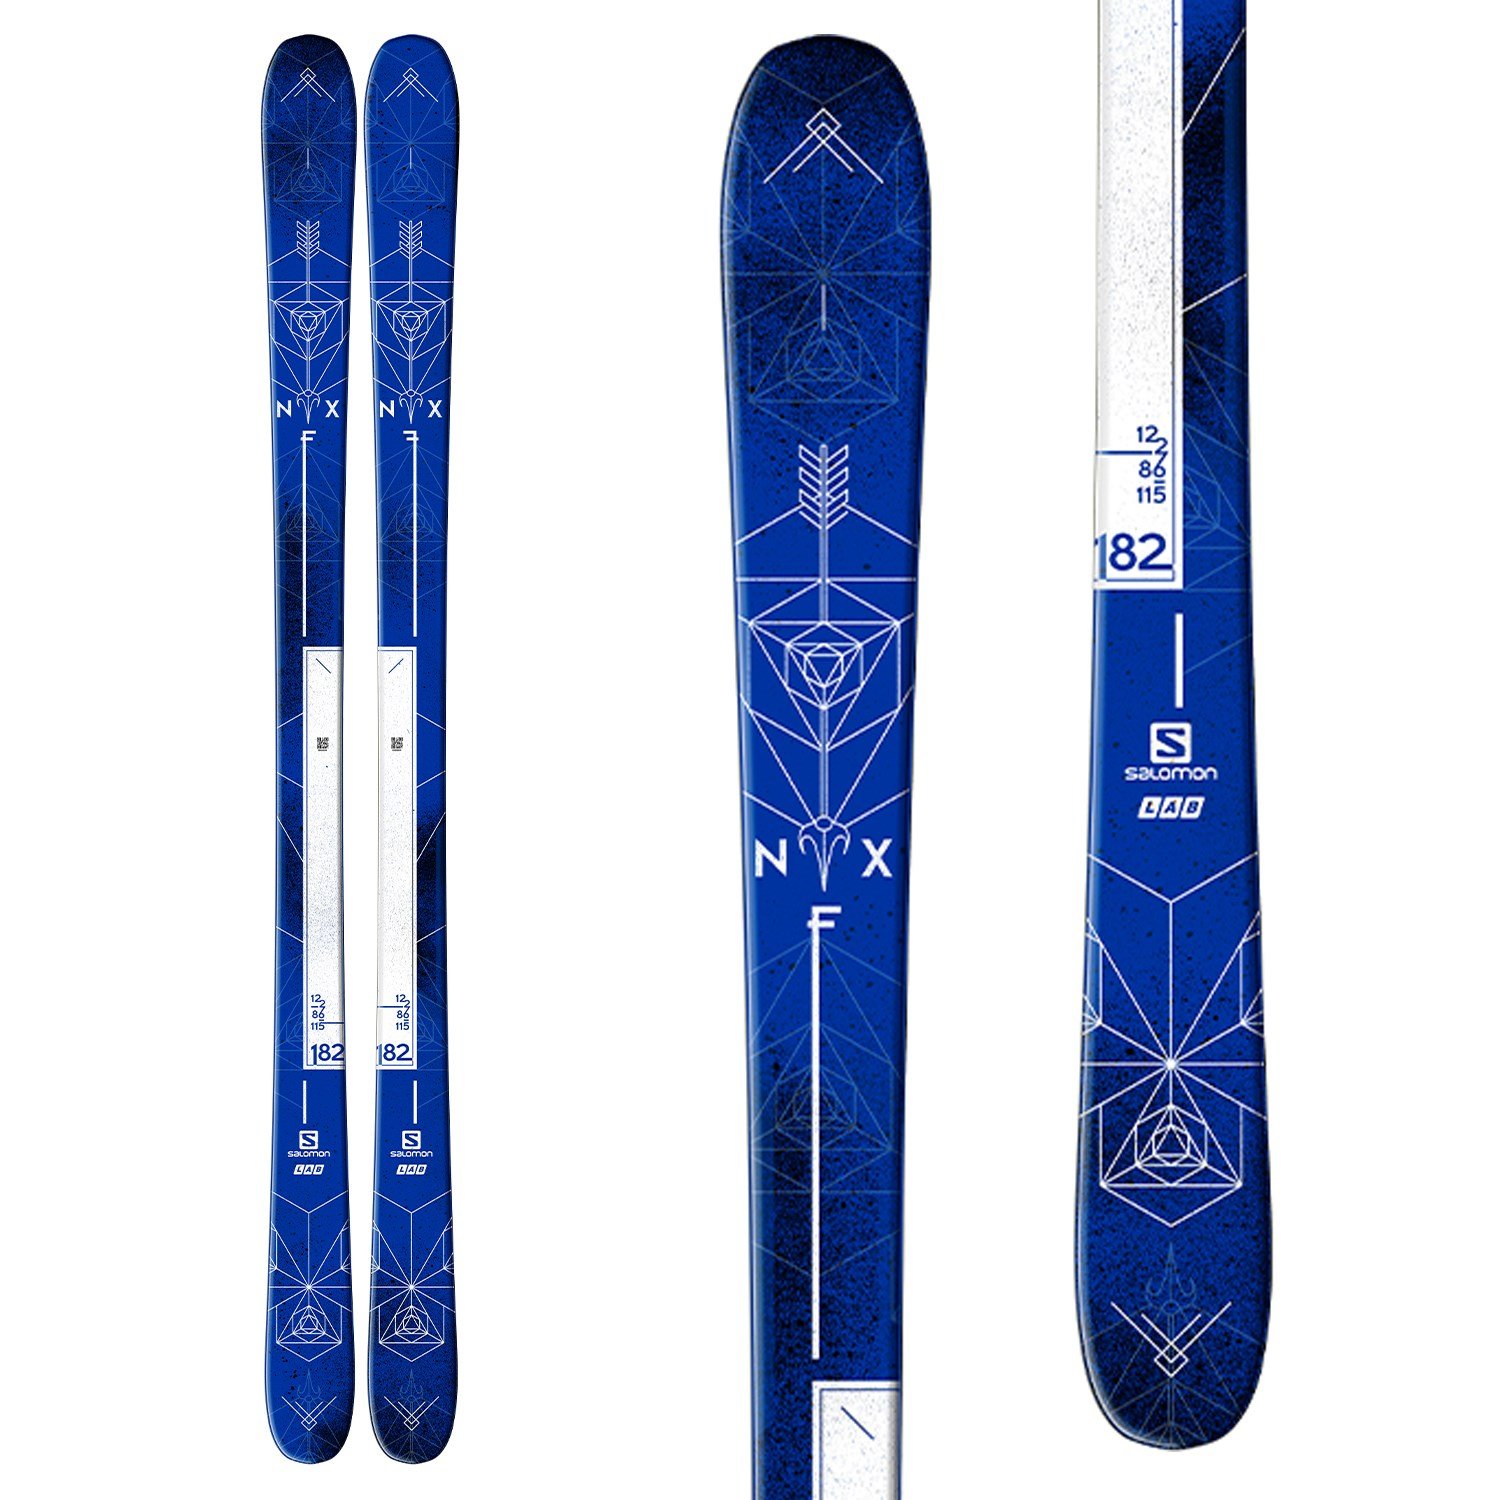 salomon park skis